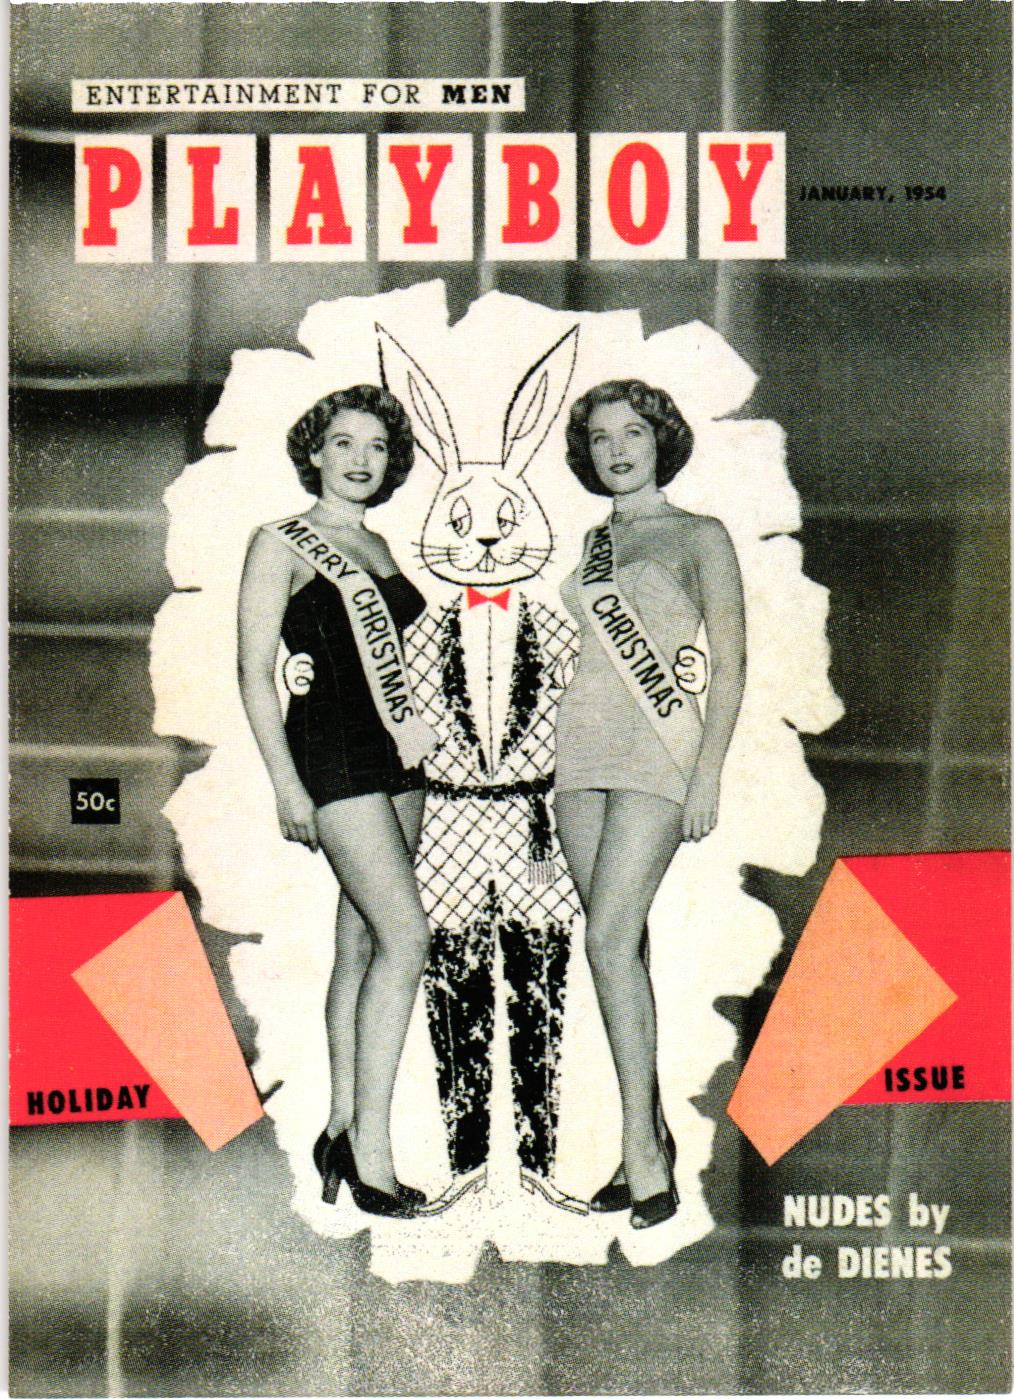 1995 Playboy JANUARY Centerfold Collection (1-129) / U Pick Cards /Buy4+ Save25%